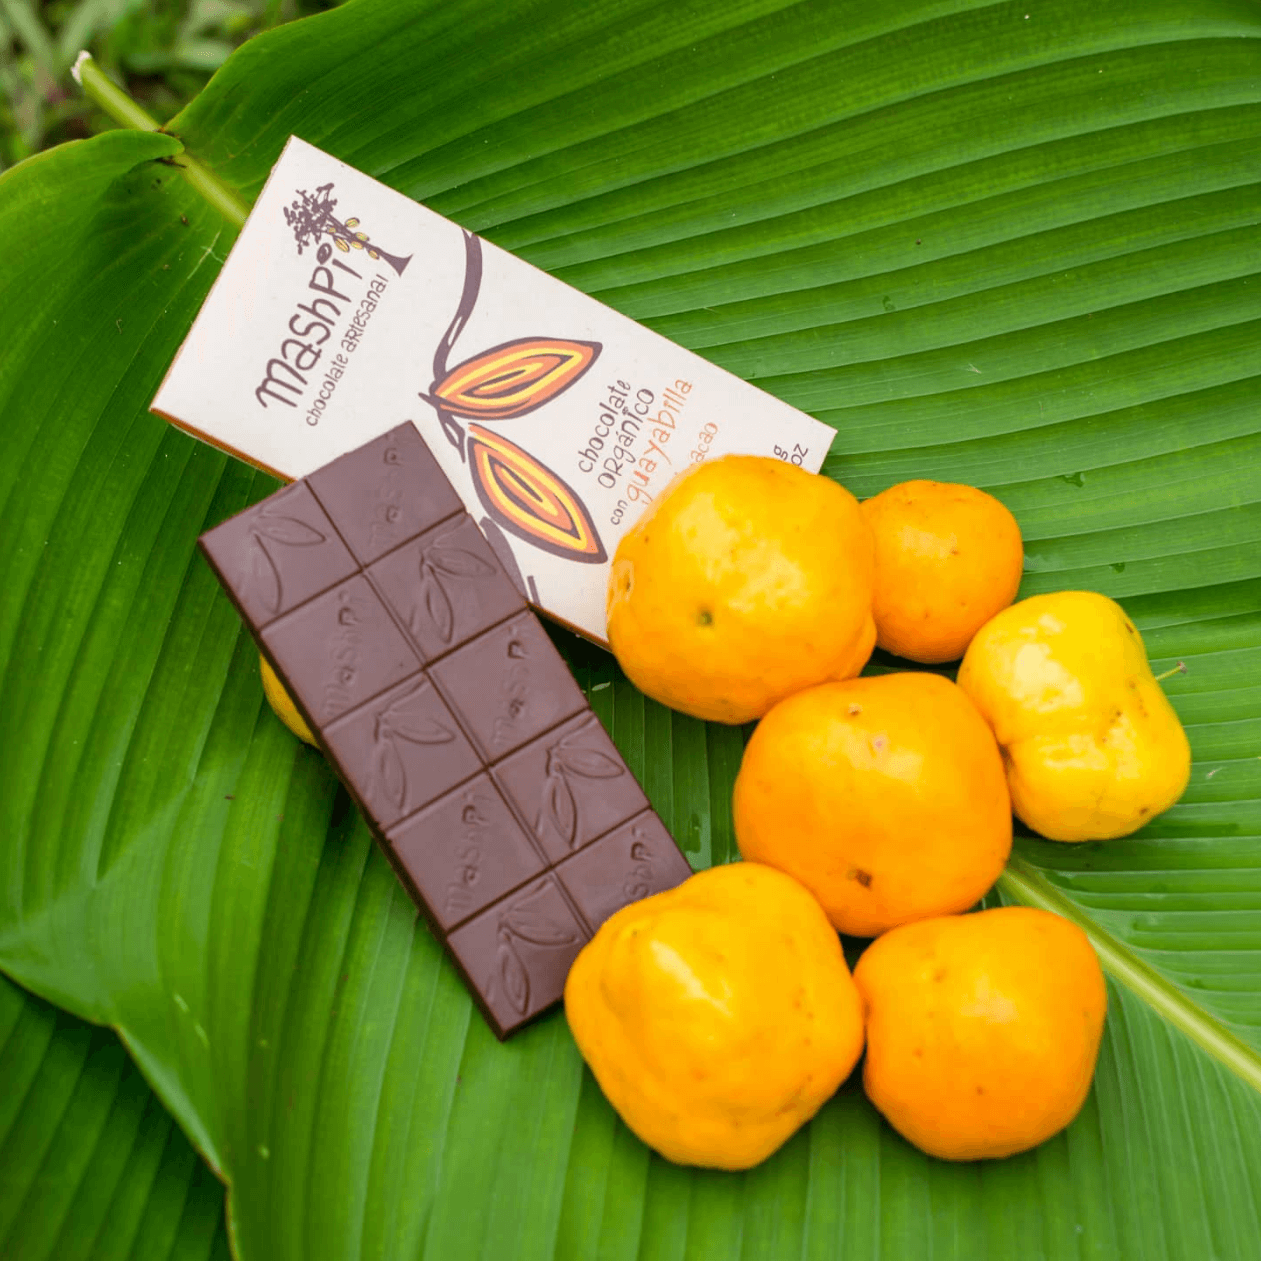 Guayabilla Chocolate Bar - Mashpi Chocolate 